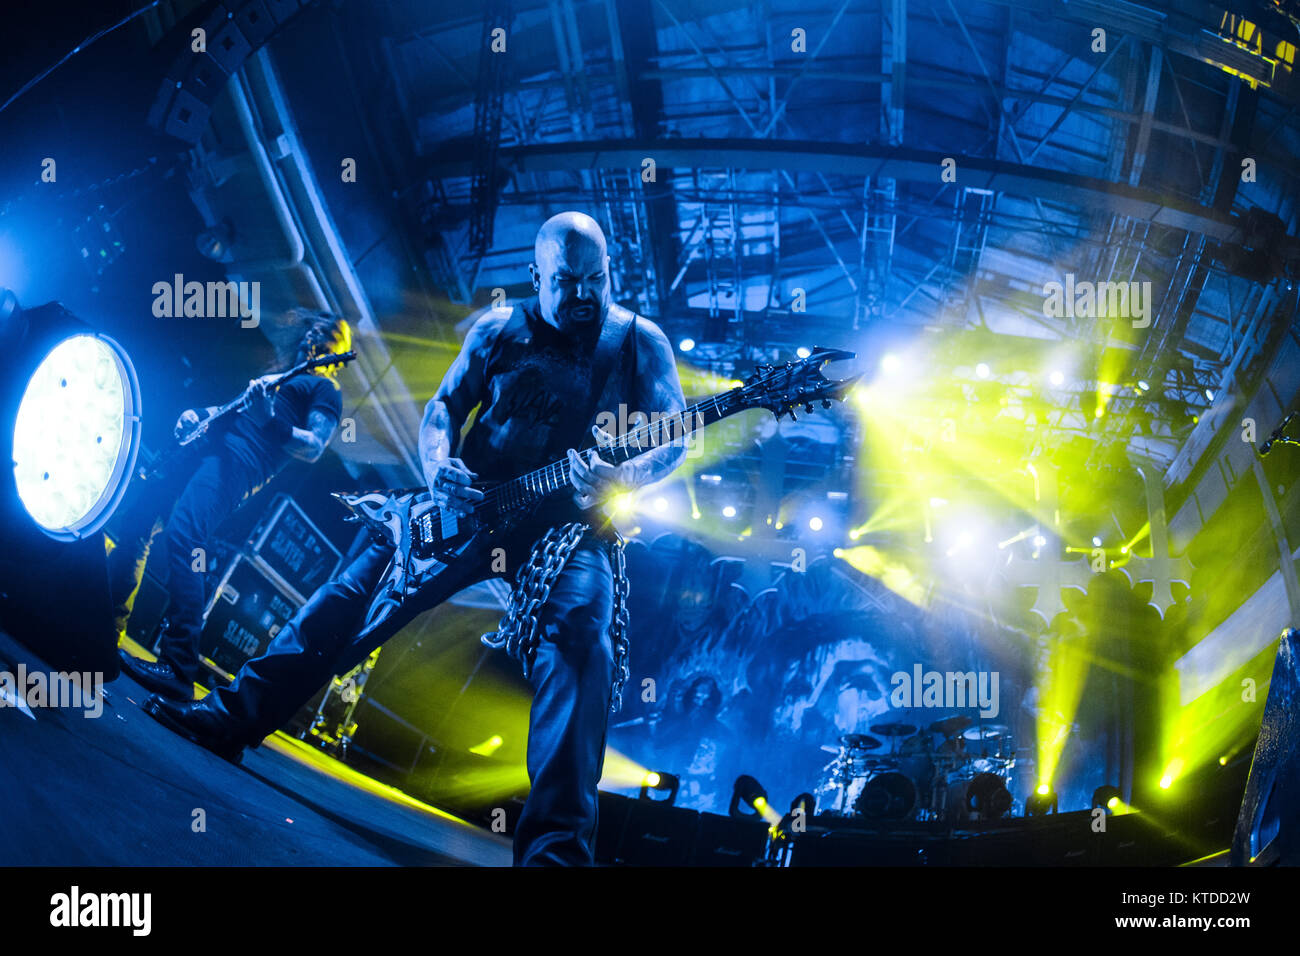 La banda de thrash metal estadounidense Slayer realiza un concierto Kulturvaerftet en Helsingør. Aquí el guitarrista Kerry King es visto en vivo en el escenario. Dinamarca, el 03/12 de 2015. Foto de stock